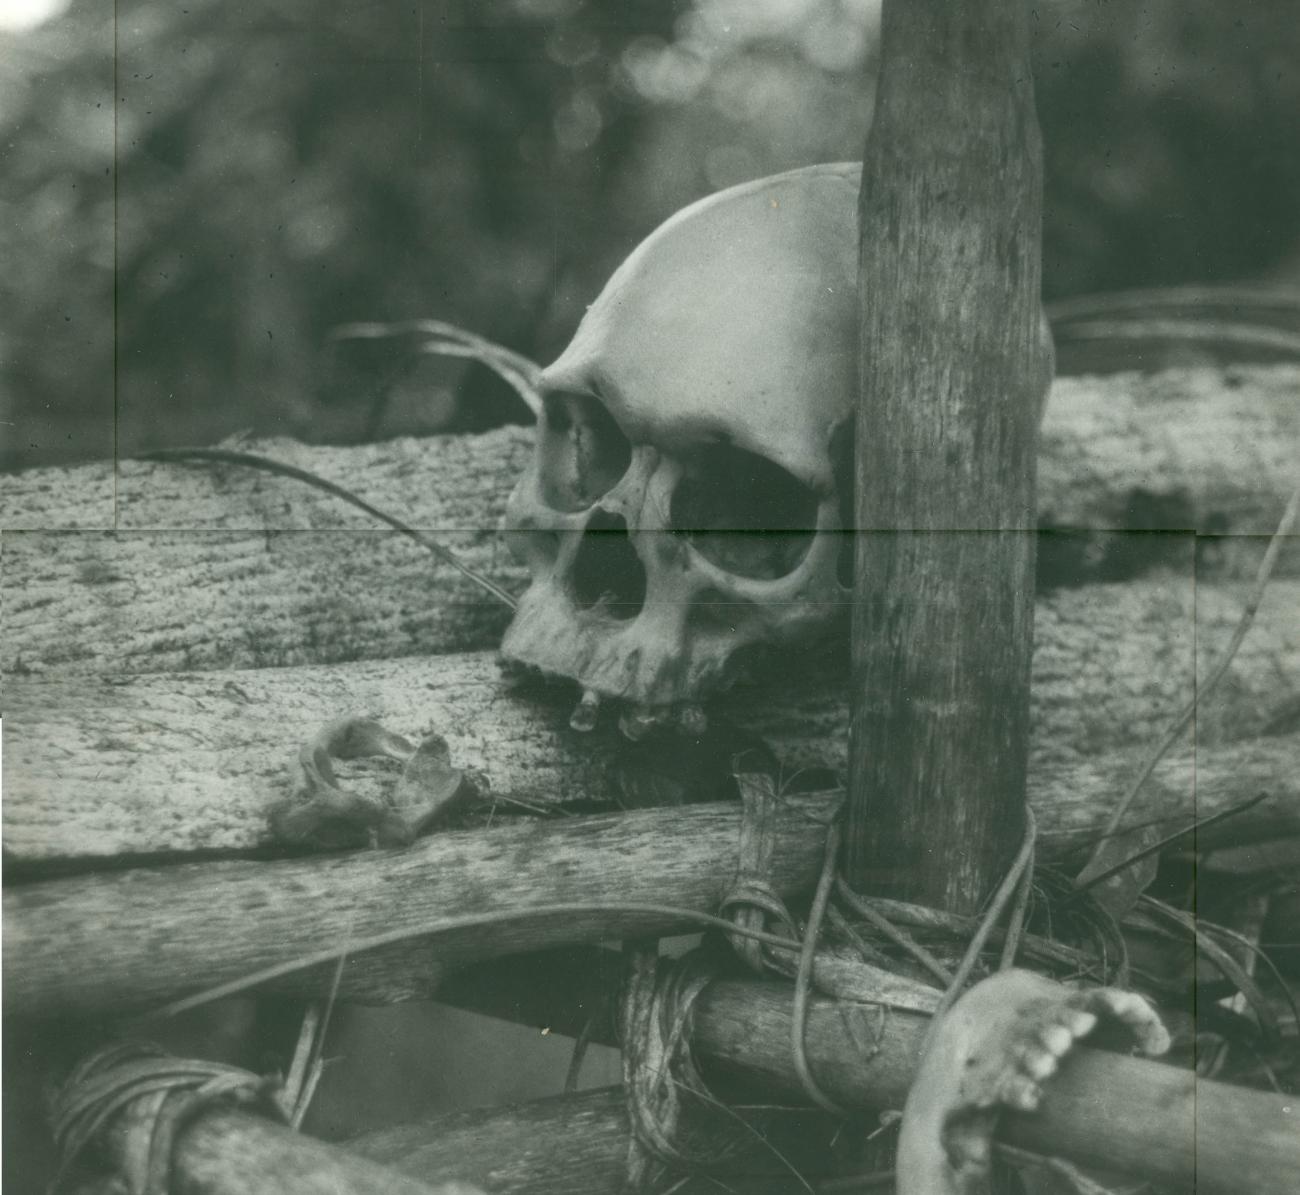 BD/40/84 - 
Skull
